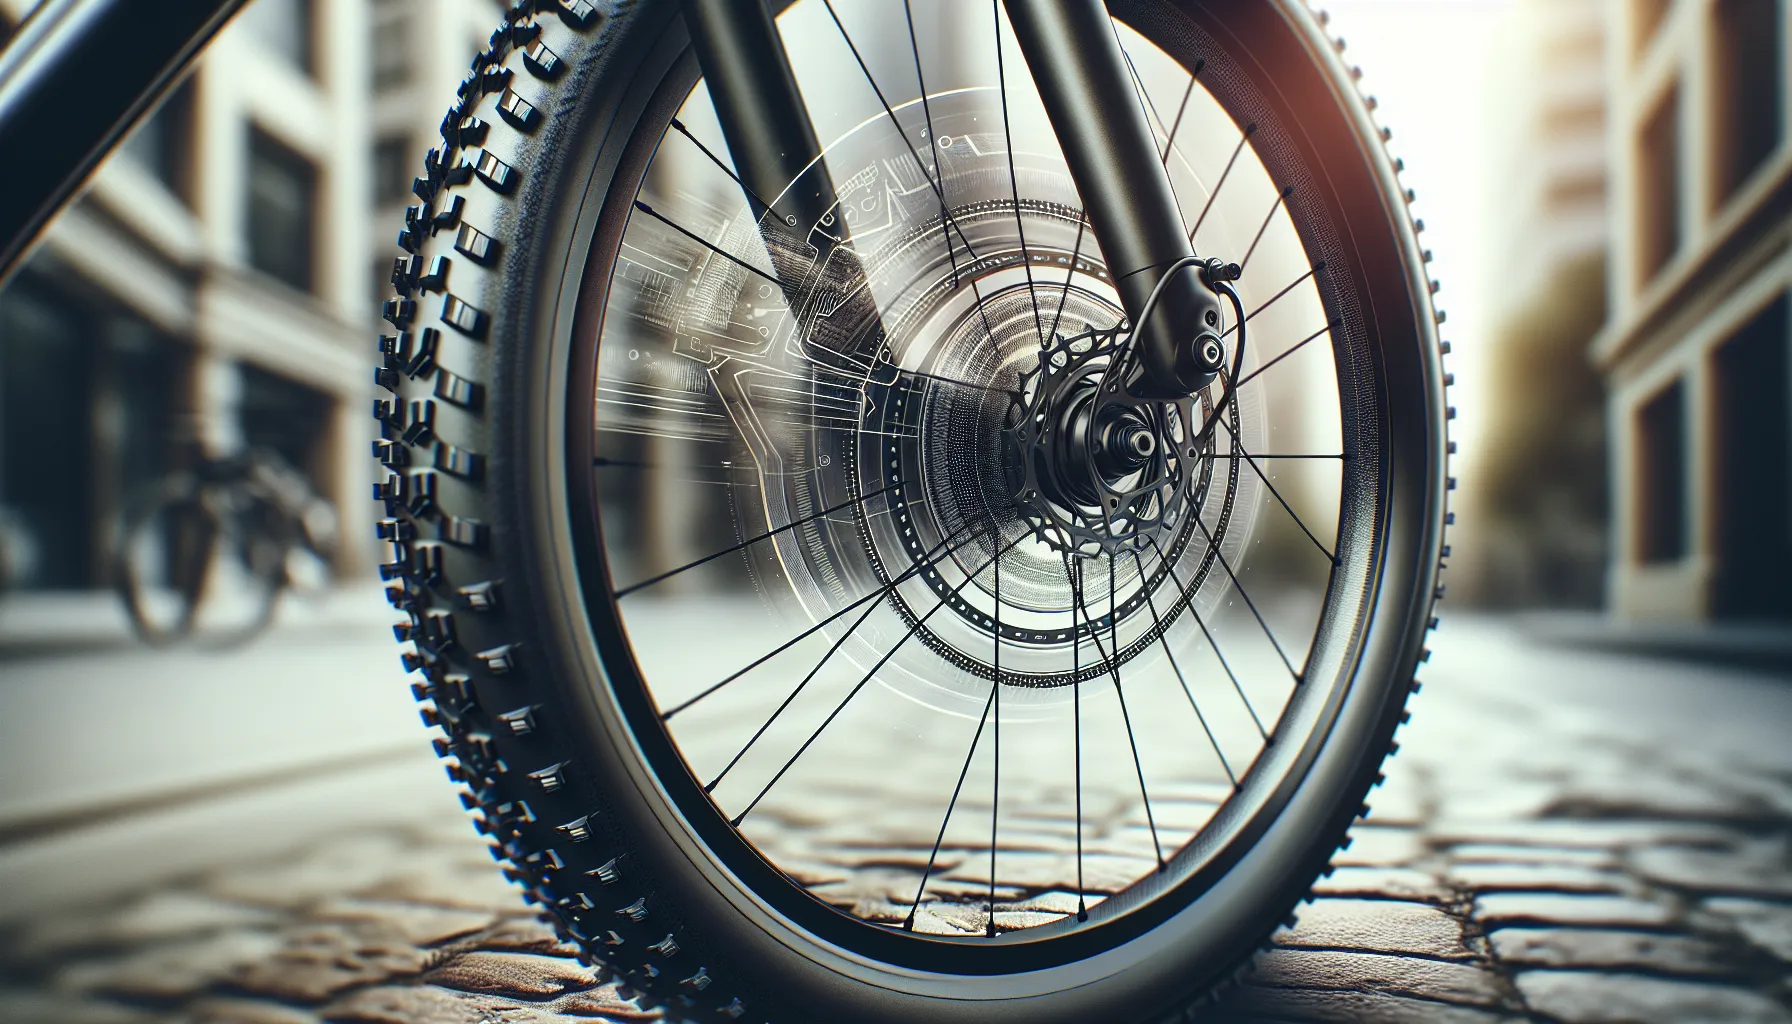 Escolher o tipo de pneu certo para ciclismo urbano pode fazer uma grande diferença na sua experiência de pedal. Existem algumas coisas a considerar ao escolher os pneus para a sua bicicleta urbana.

1. Tamanho do pneu: O primeiro passo é verificar o tamanho do pneu que a sua bicicleta suporta. Isso geralmente é indicado na parede lateral do pneu atual. Certifique-se